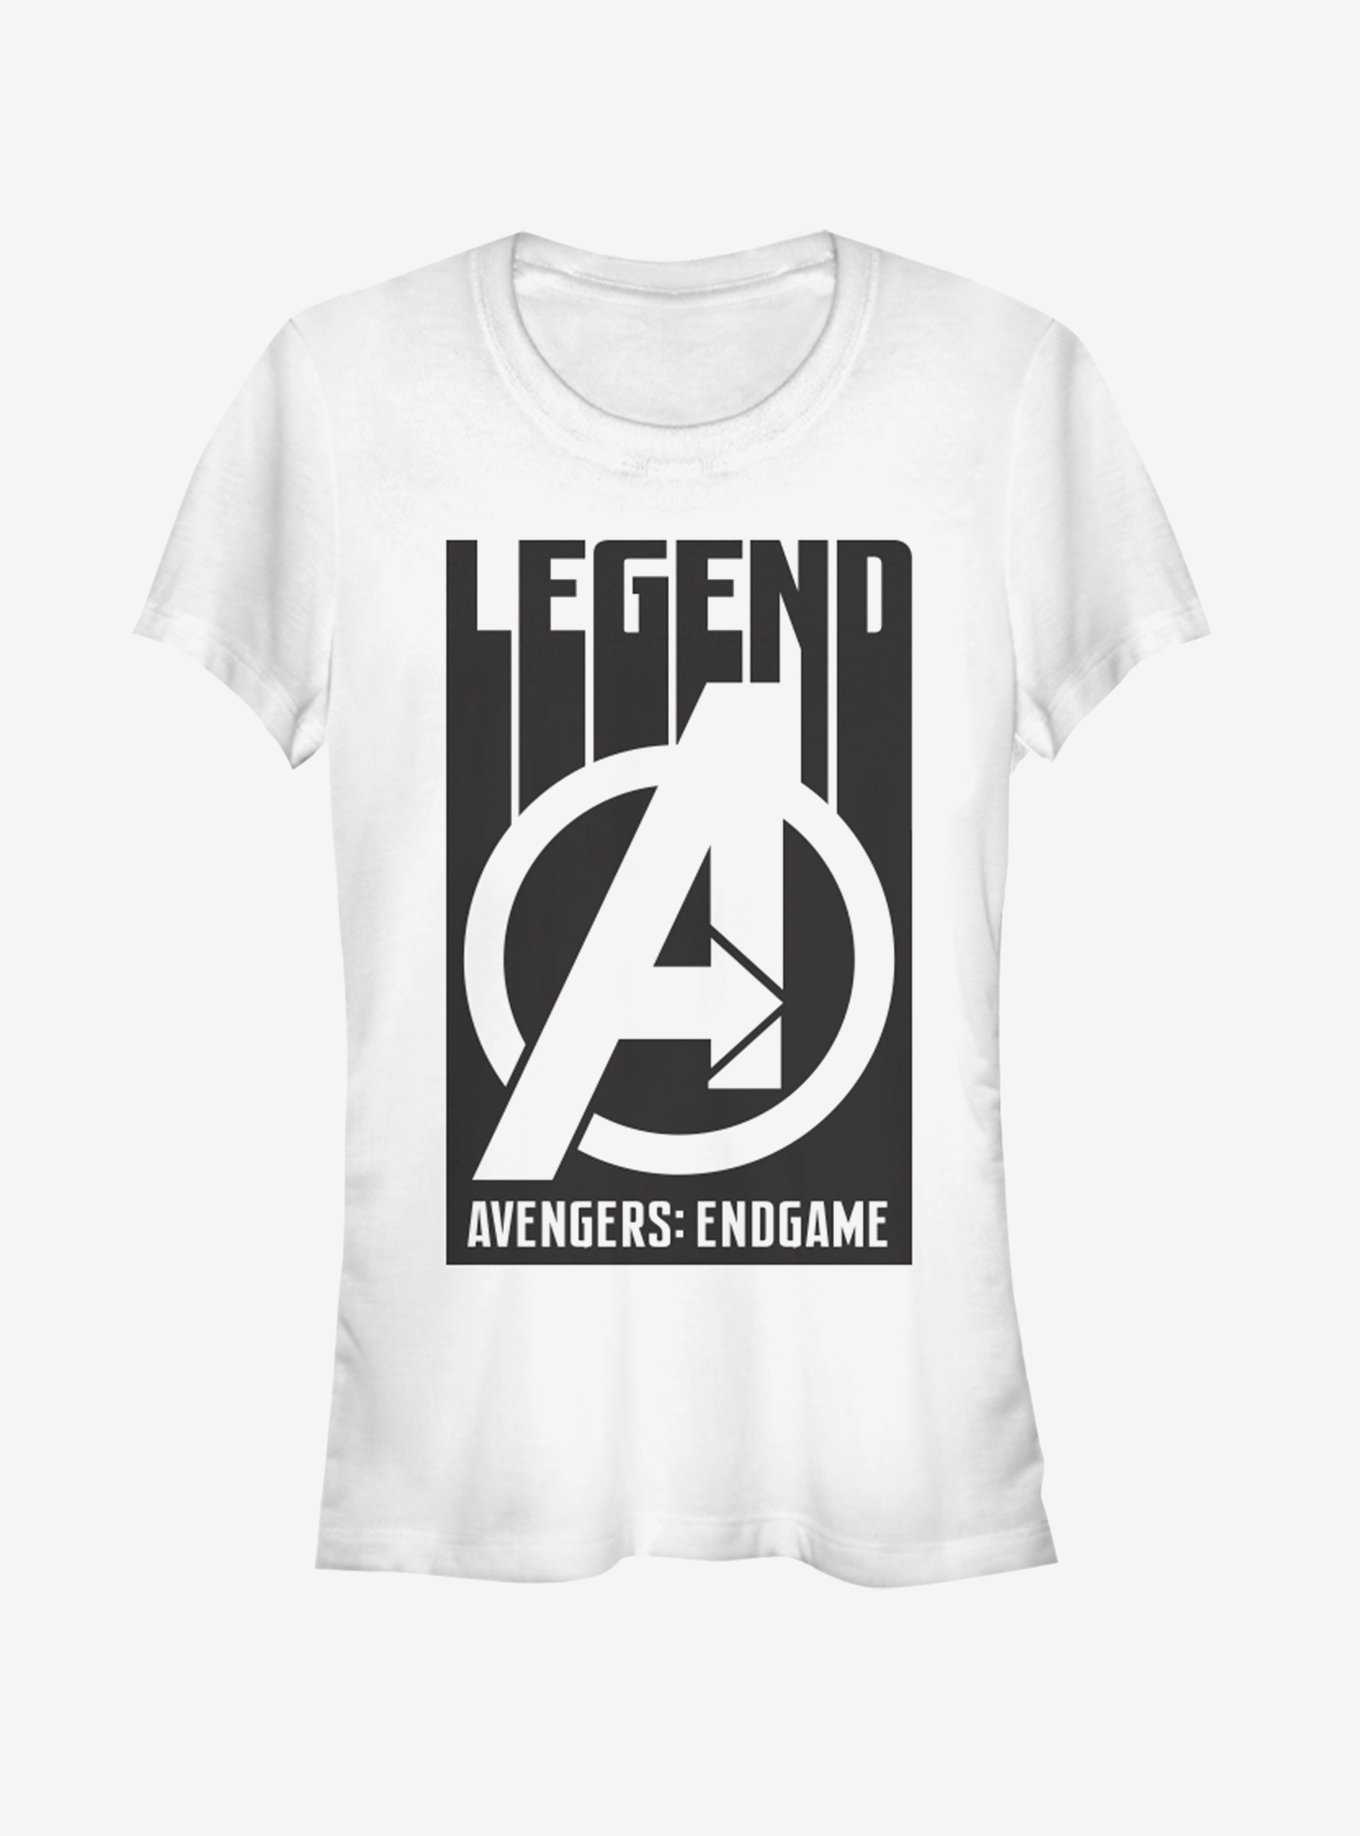 Marvel Avengers: Endgame Avengers Legends Girls White T-Shirt, , hi-res